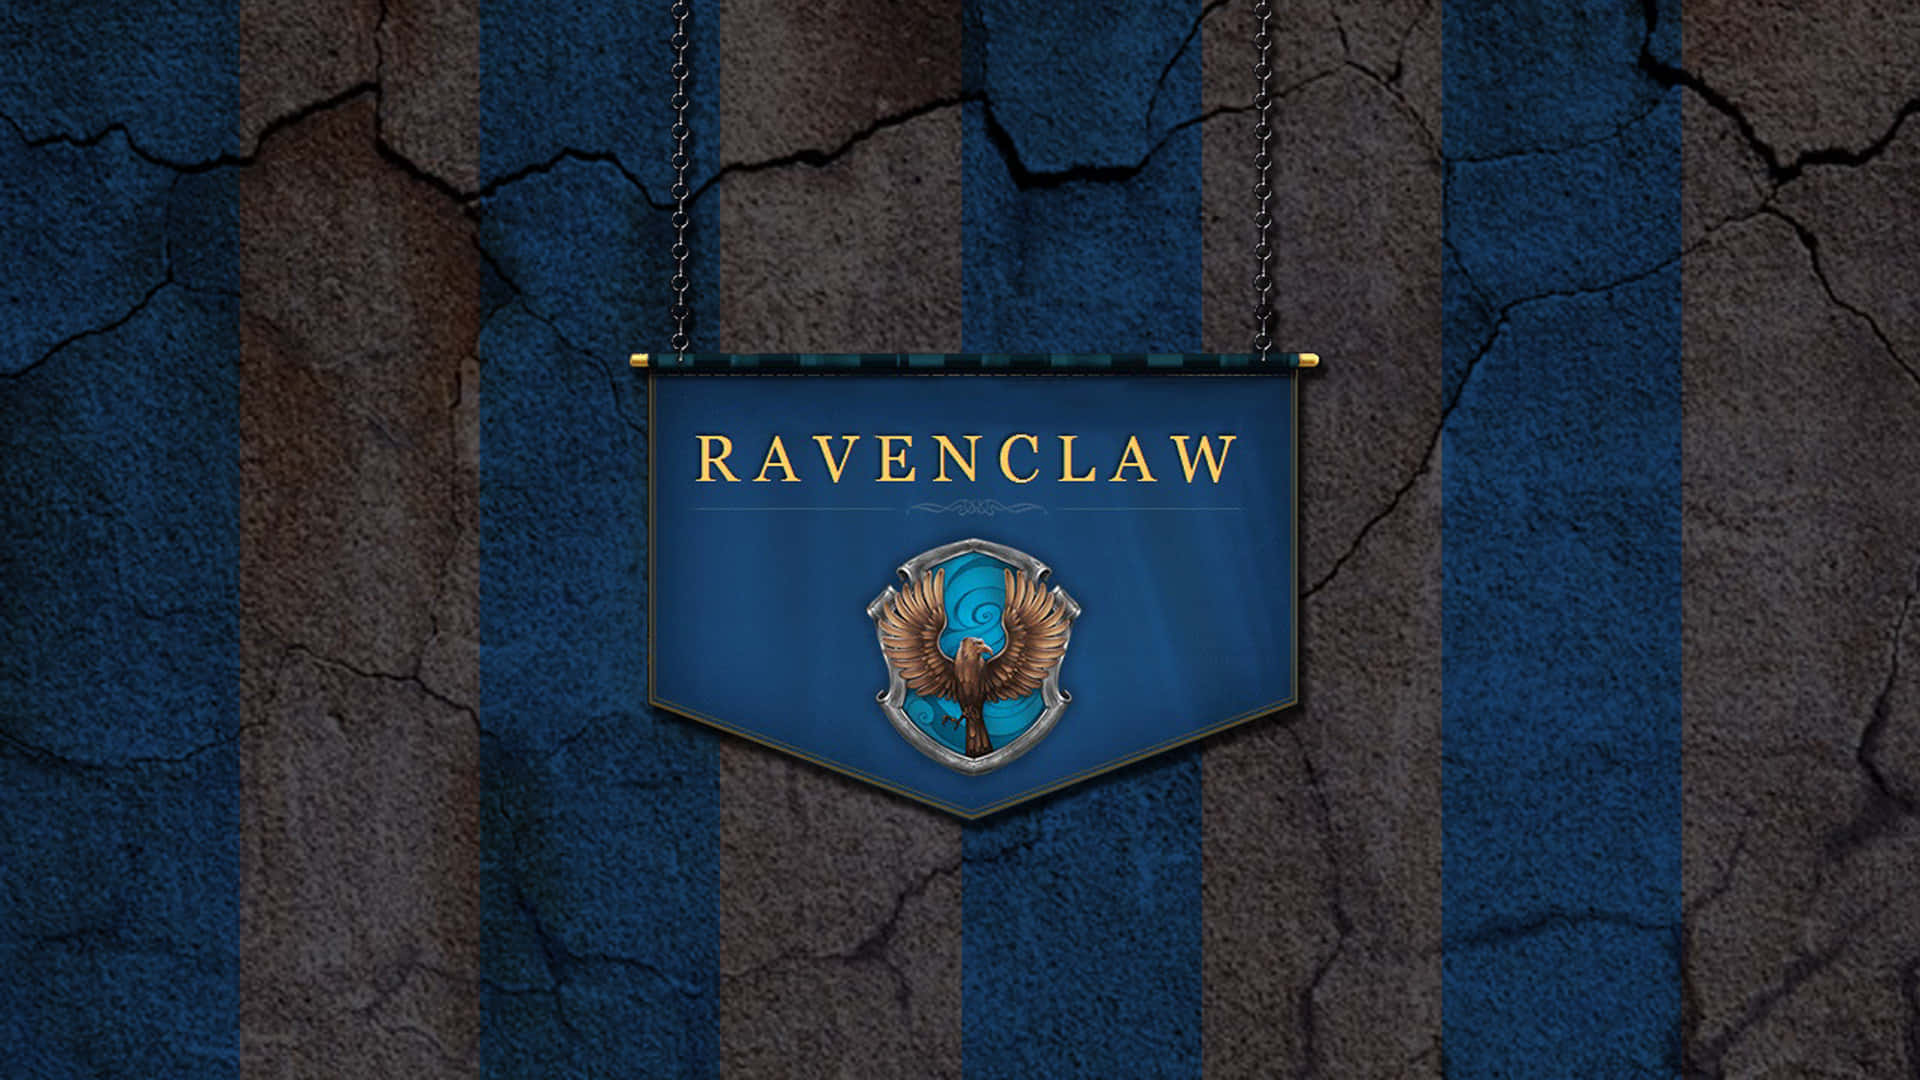 Ravenclawbanner På En Blå Væg